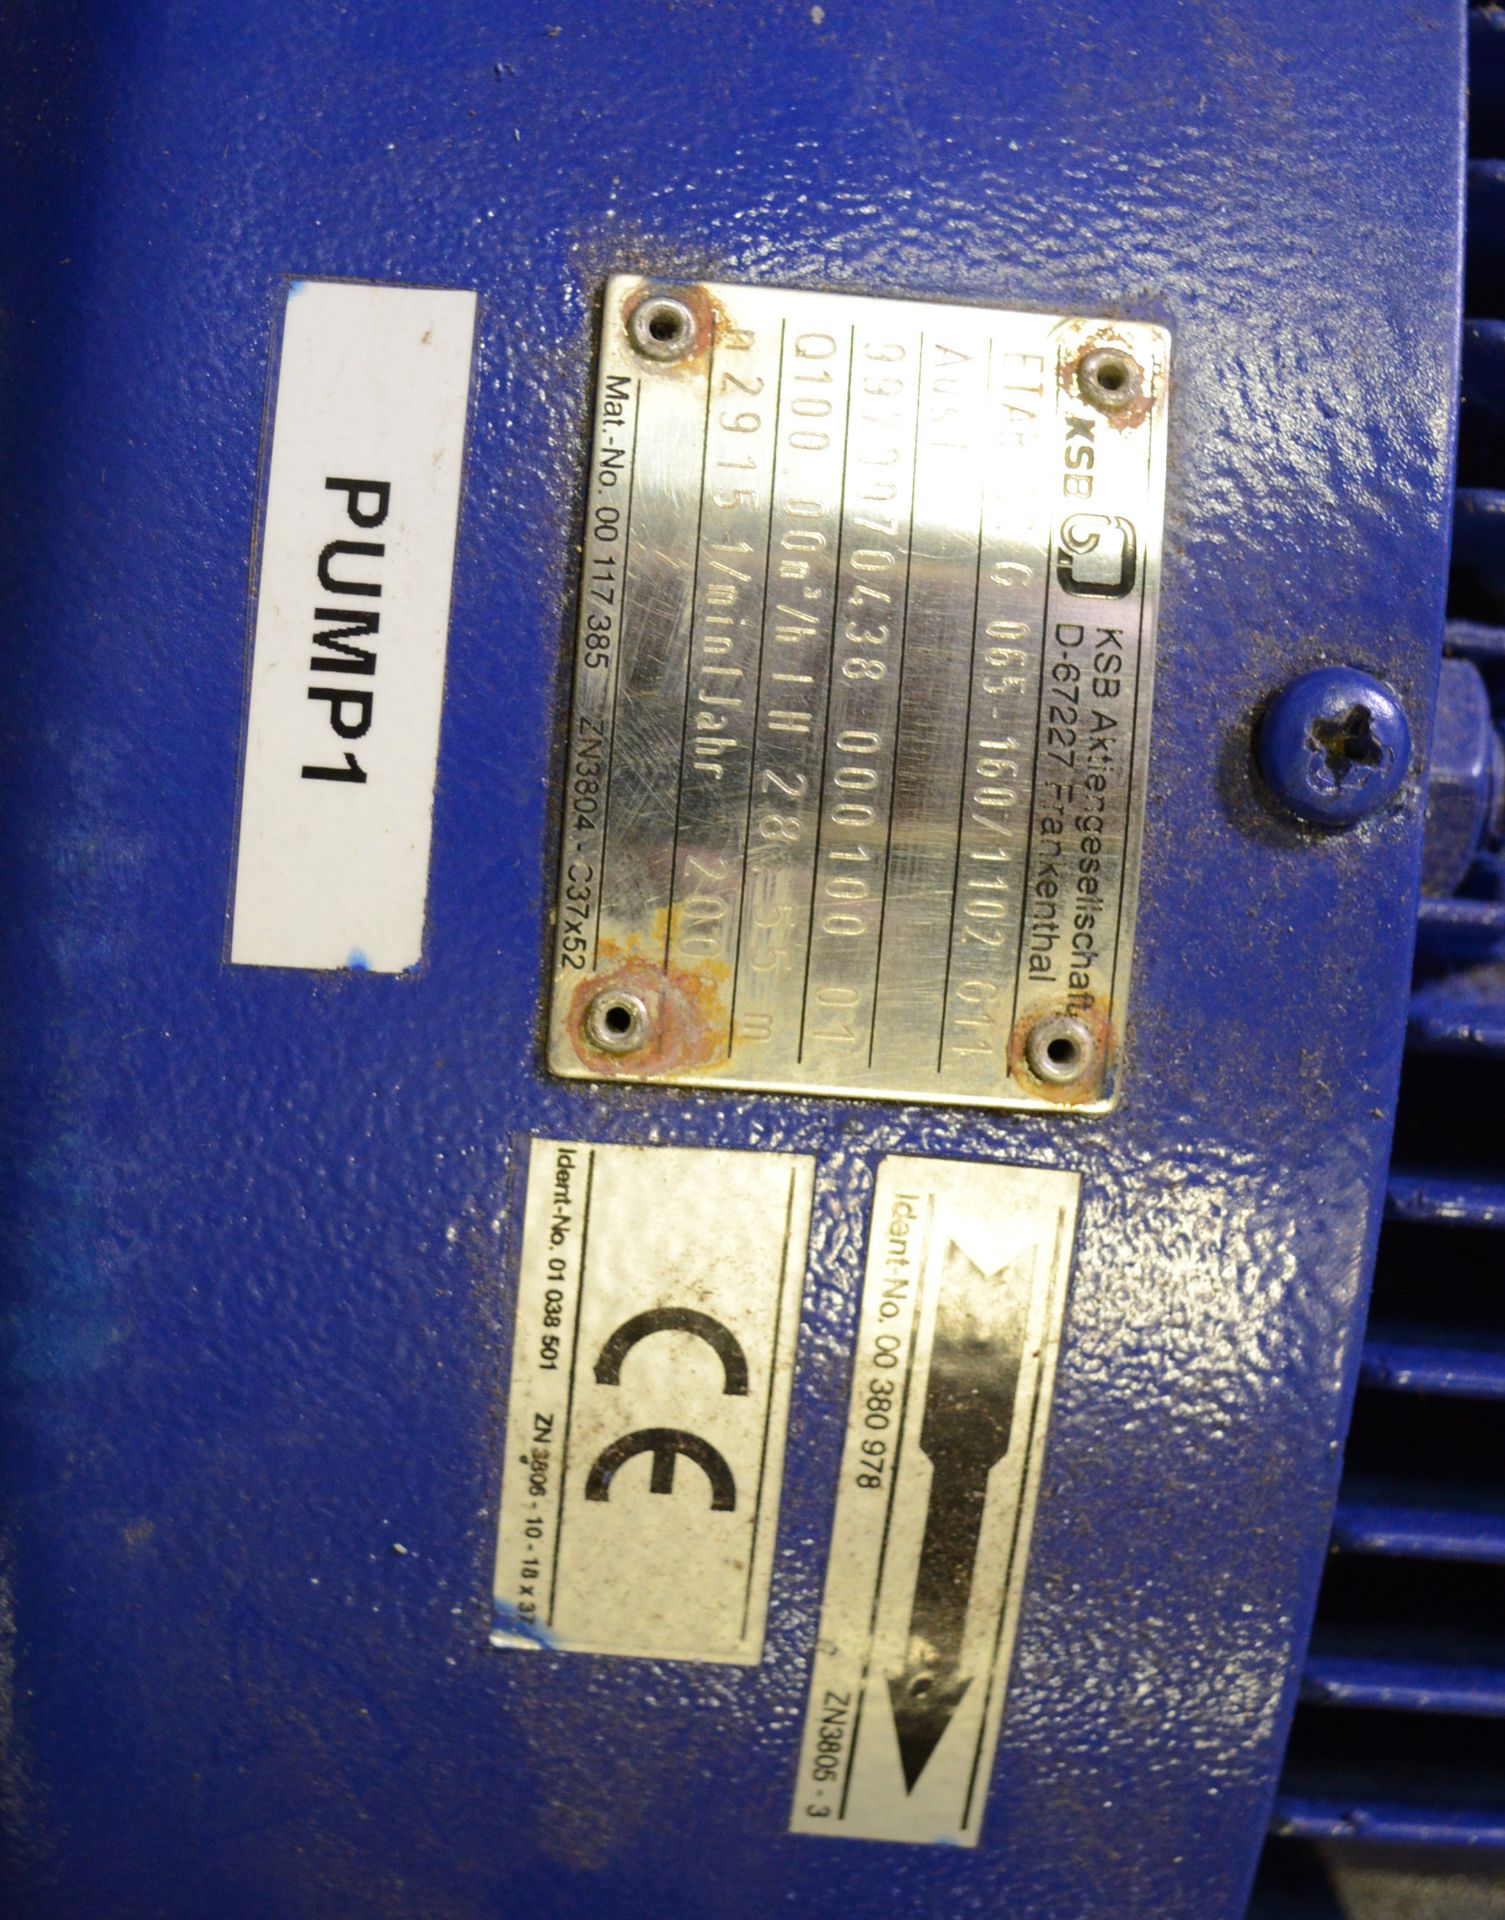 ETABLOC G 065-160/1102 Pump. - Image 2 of 2